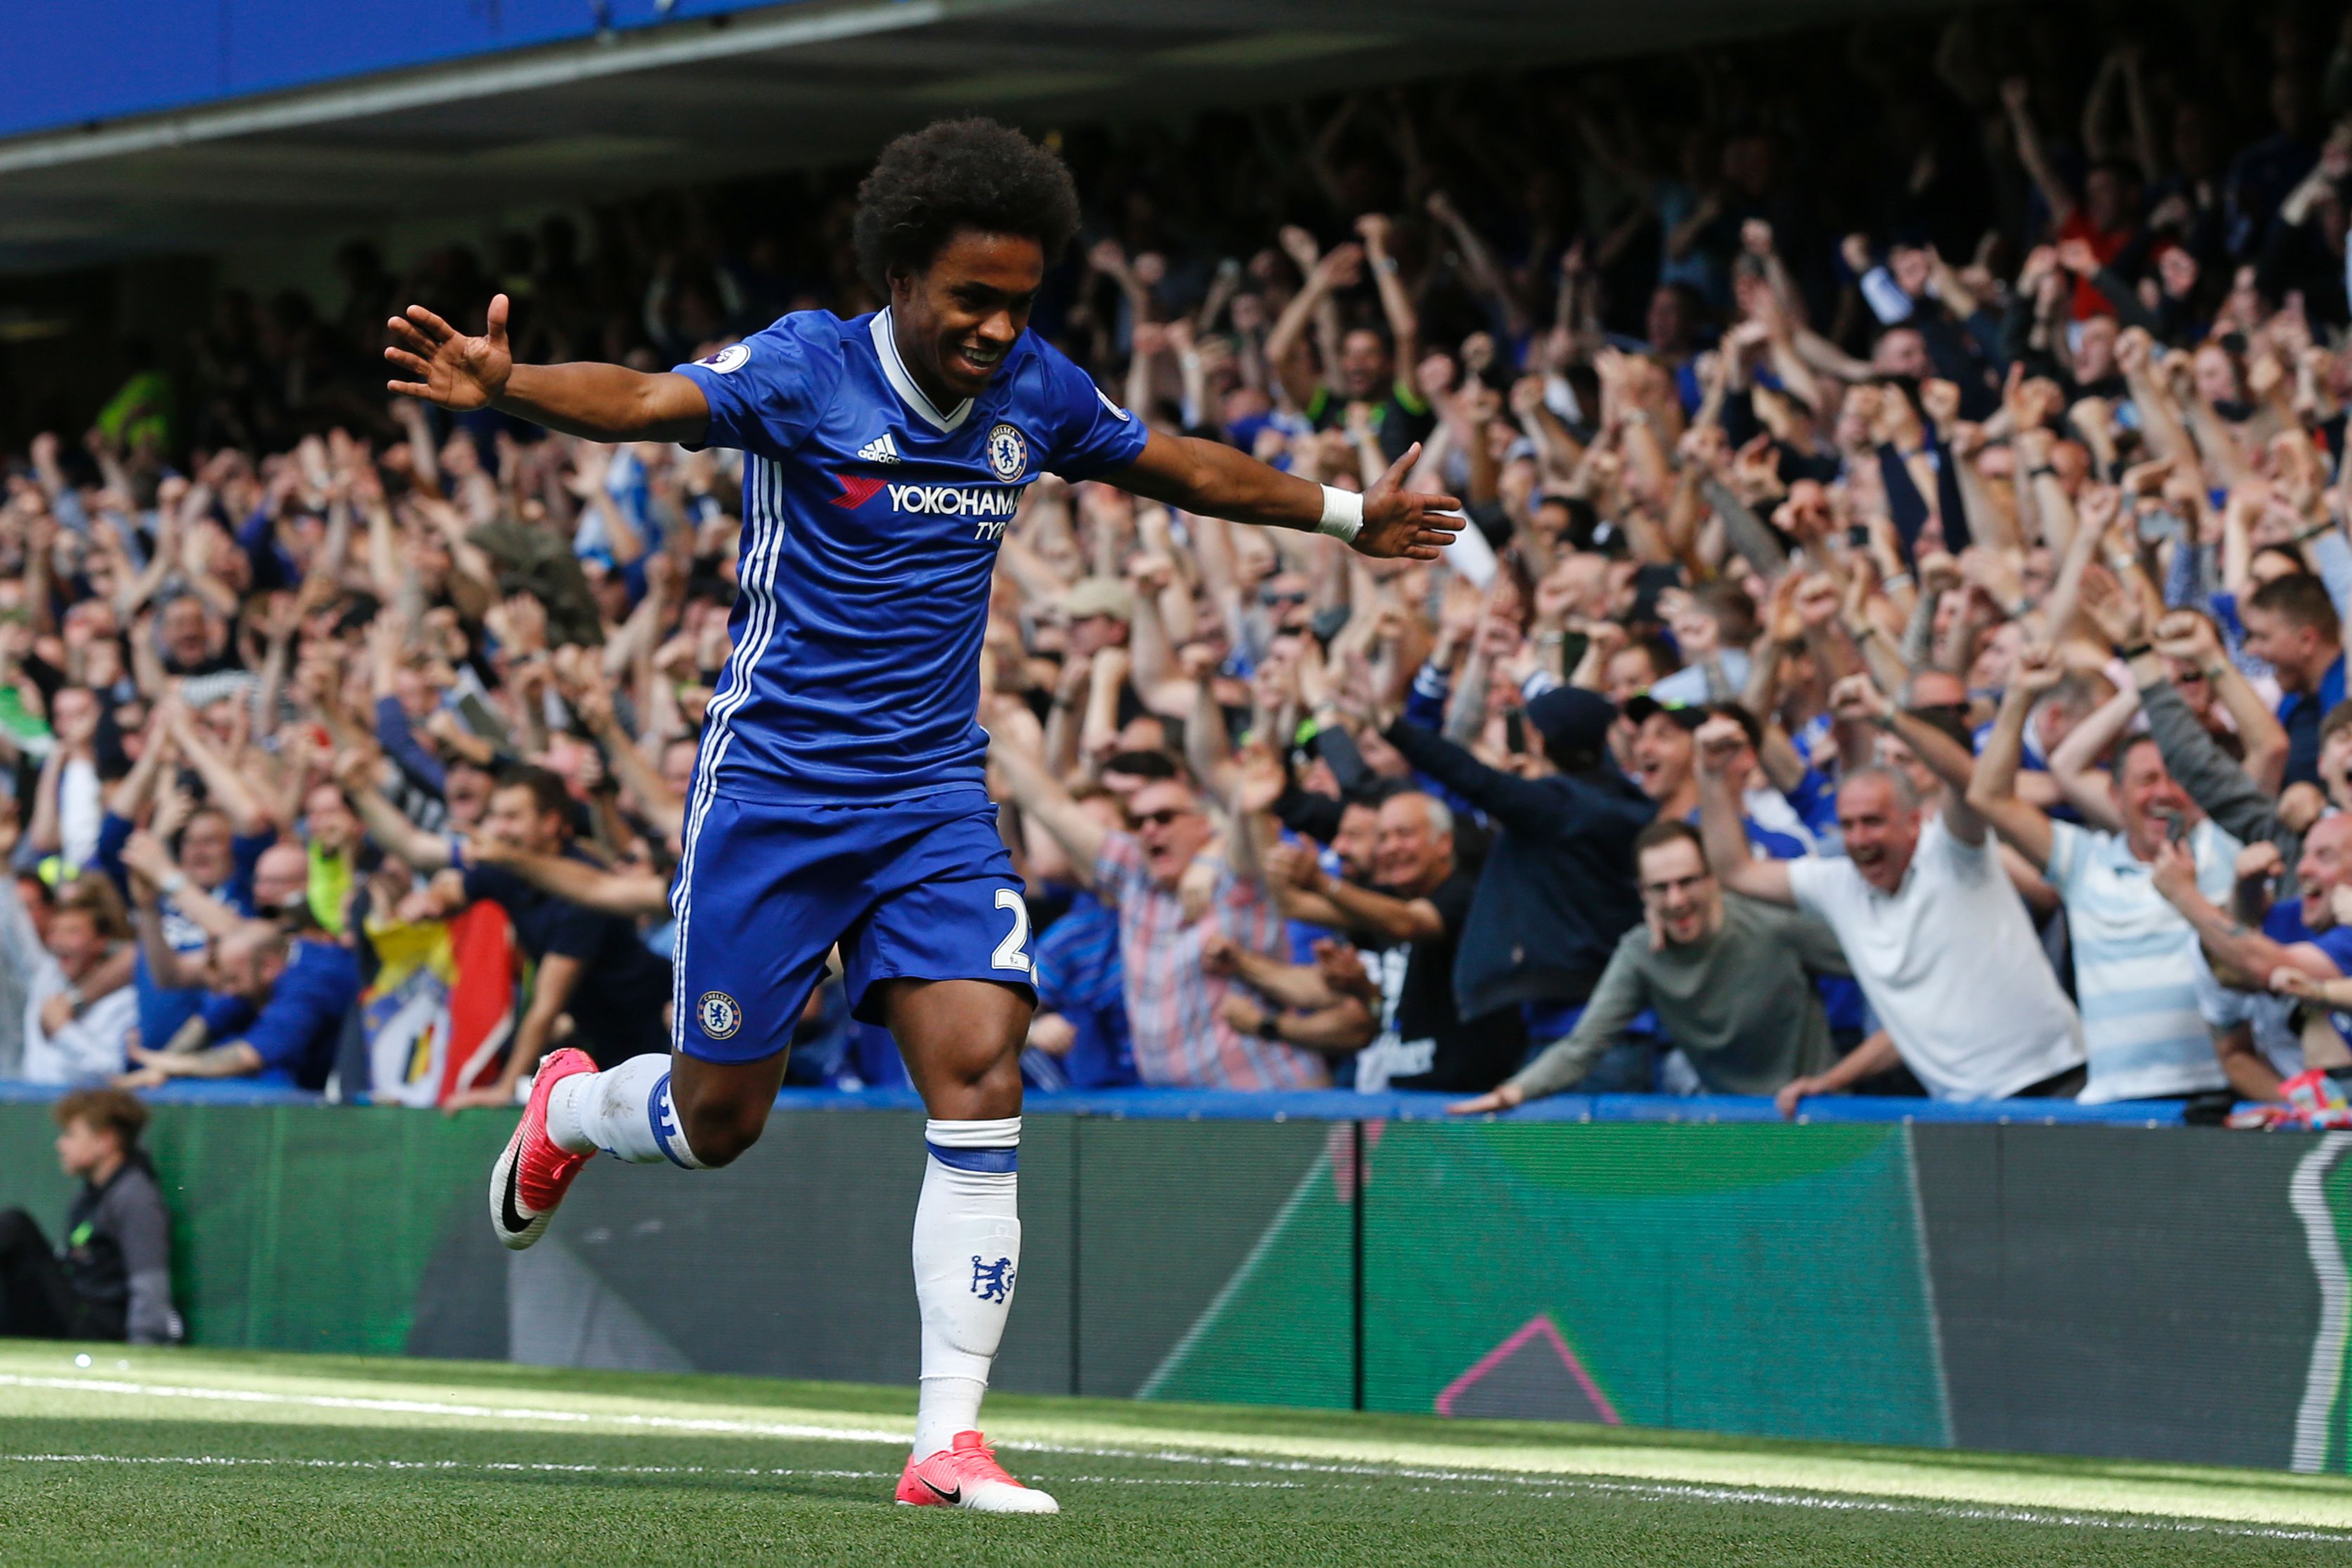 Willian will be the key to Chelsea's attacks (AFP PHOTO / Ian KINGTON)